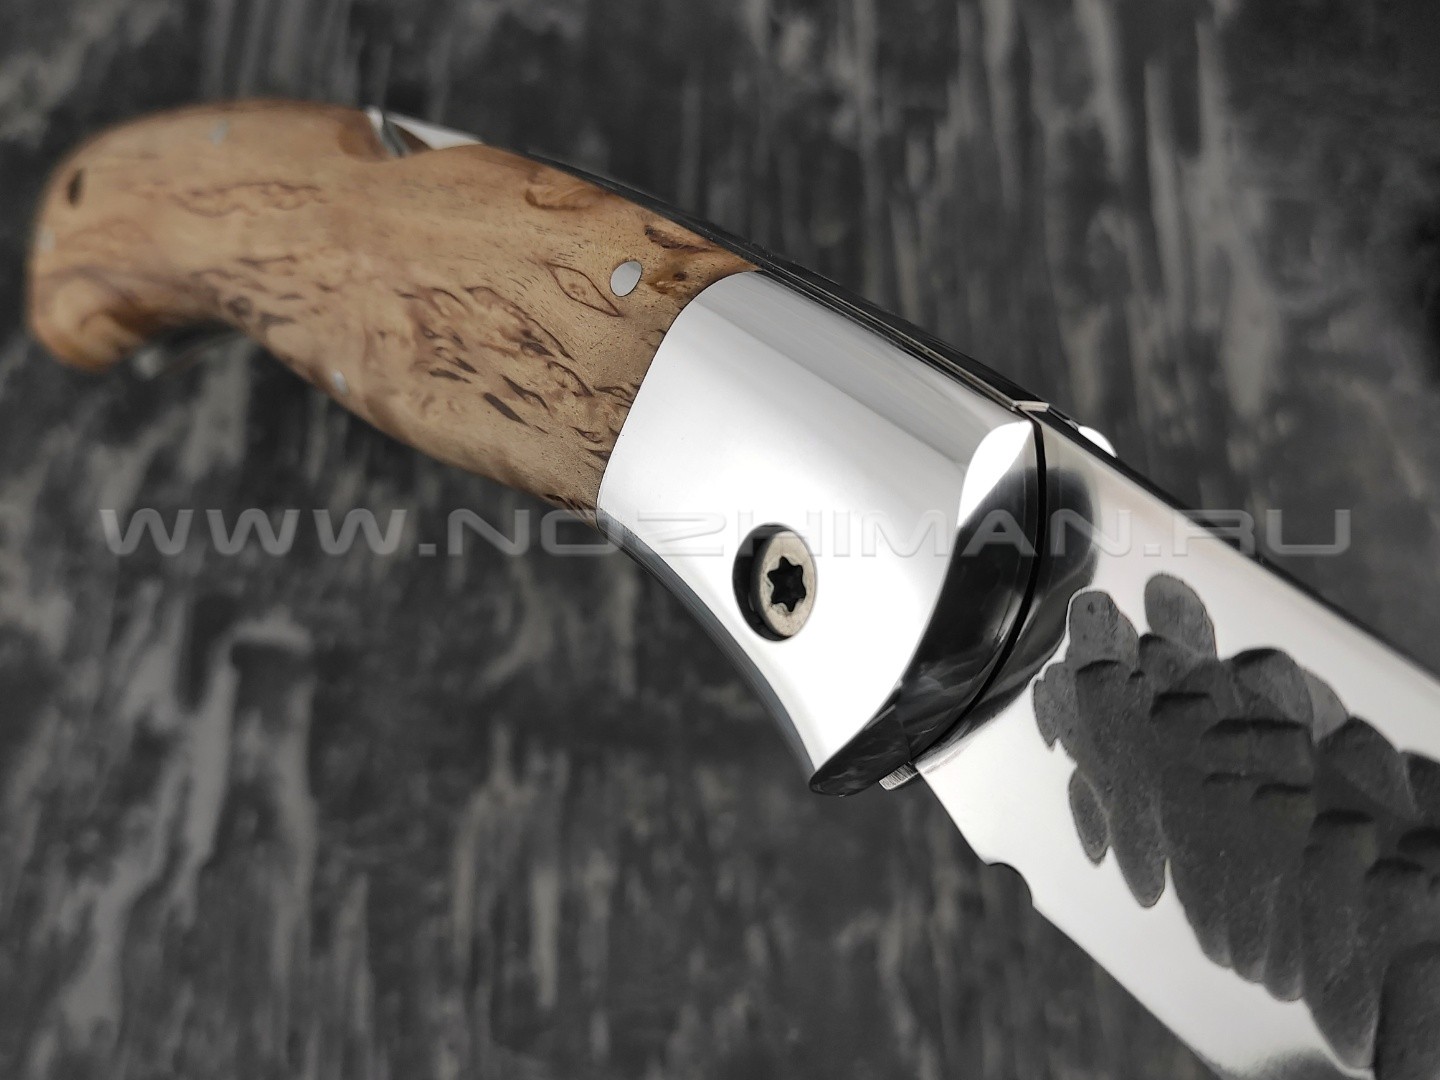 Нож складной "Якутский-СКЛ" сталь Х12МФ линза, кованый дол, рукоять стаб. карельская берёза (Стальные Бивни)